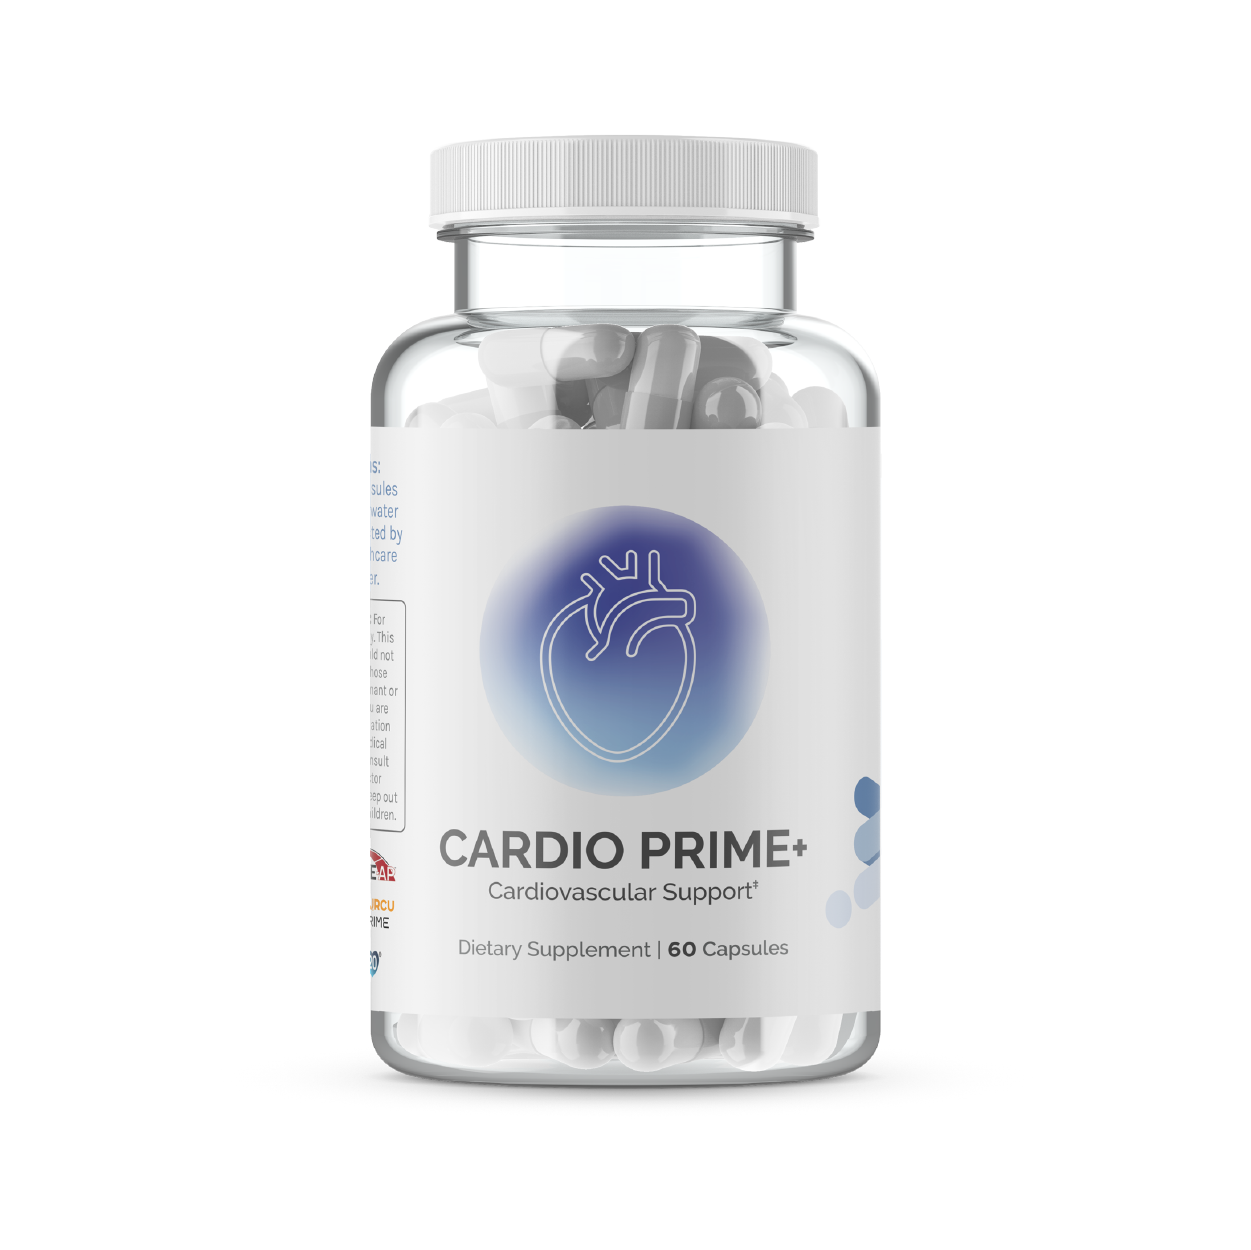 Cardio Prime+